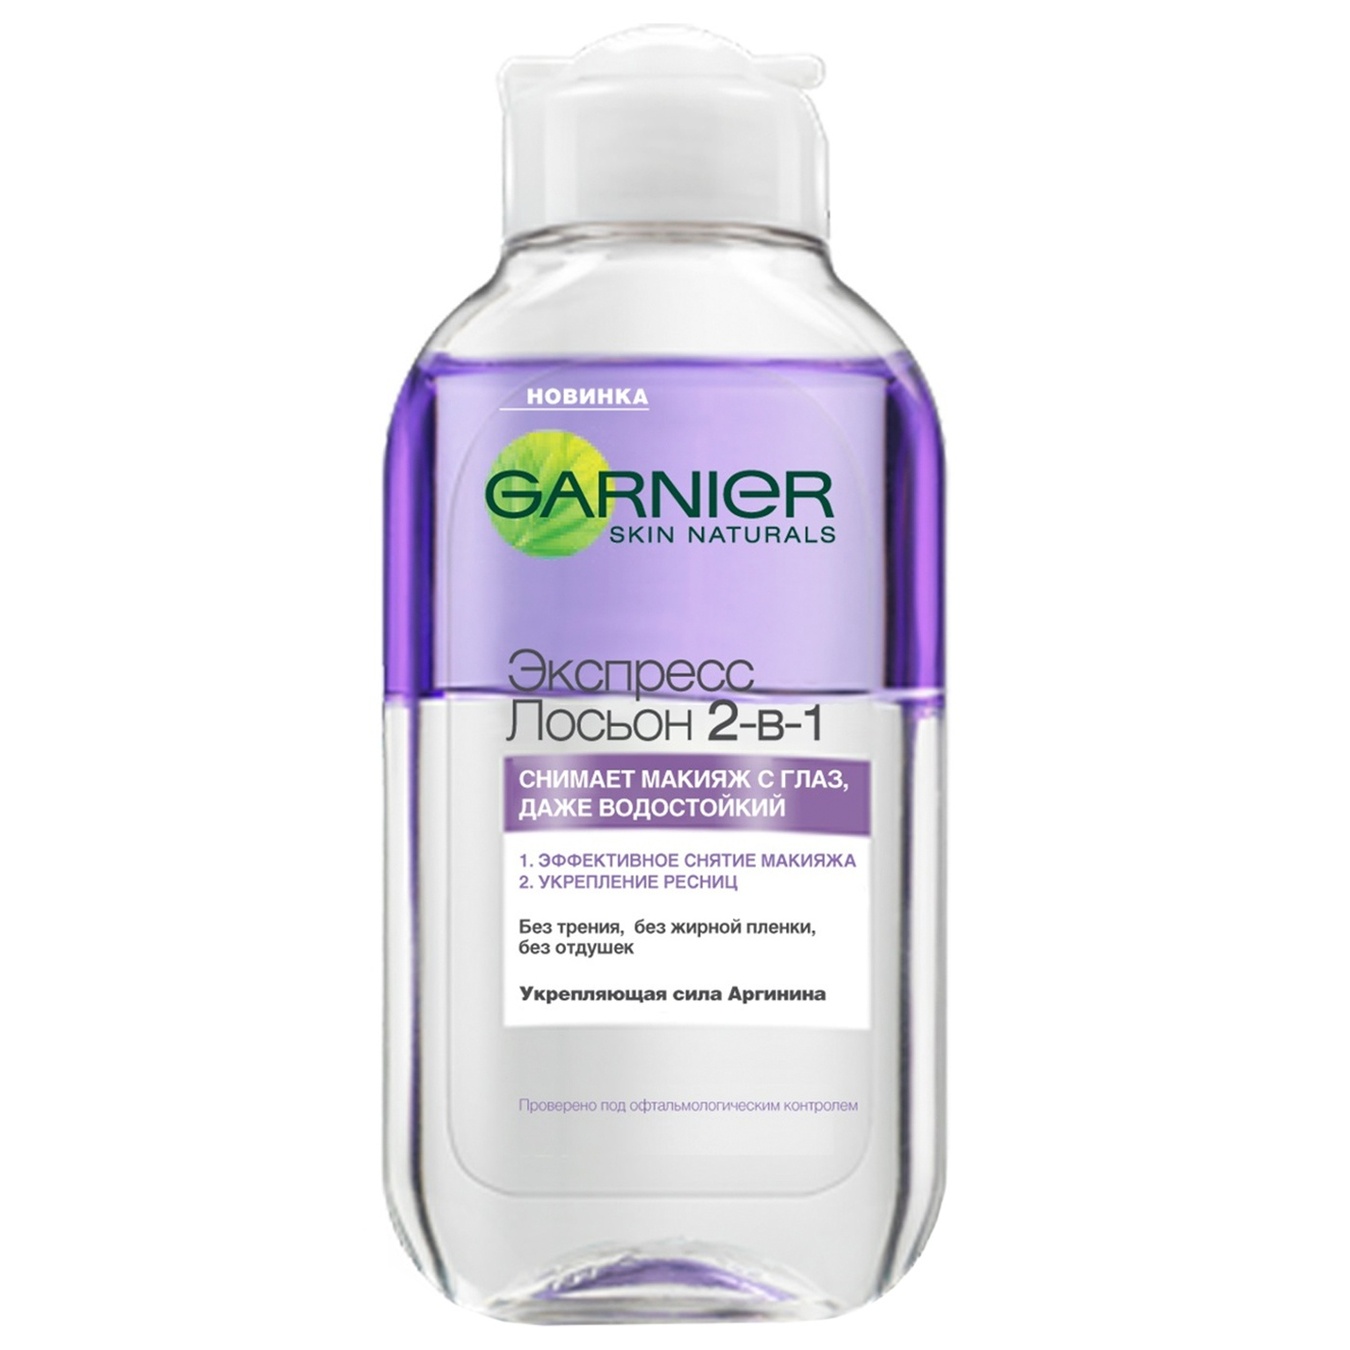 Garnier Skin Naturals eye make-up remover Express 2 in 1 125 ml